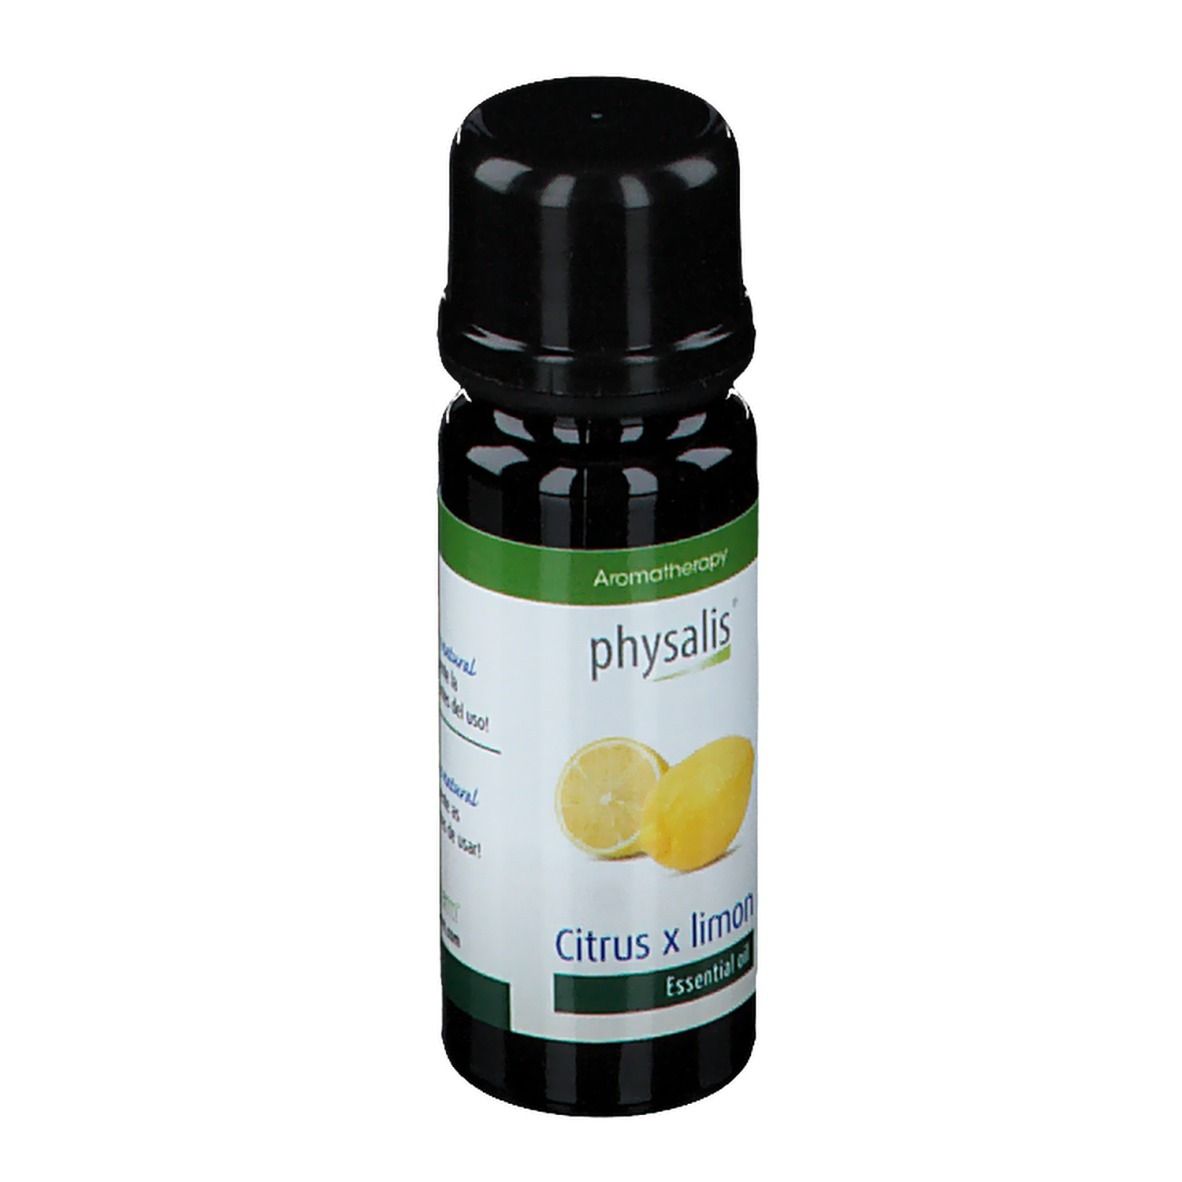 Physalis® Citron Huile essentielle